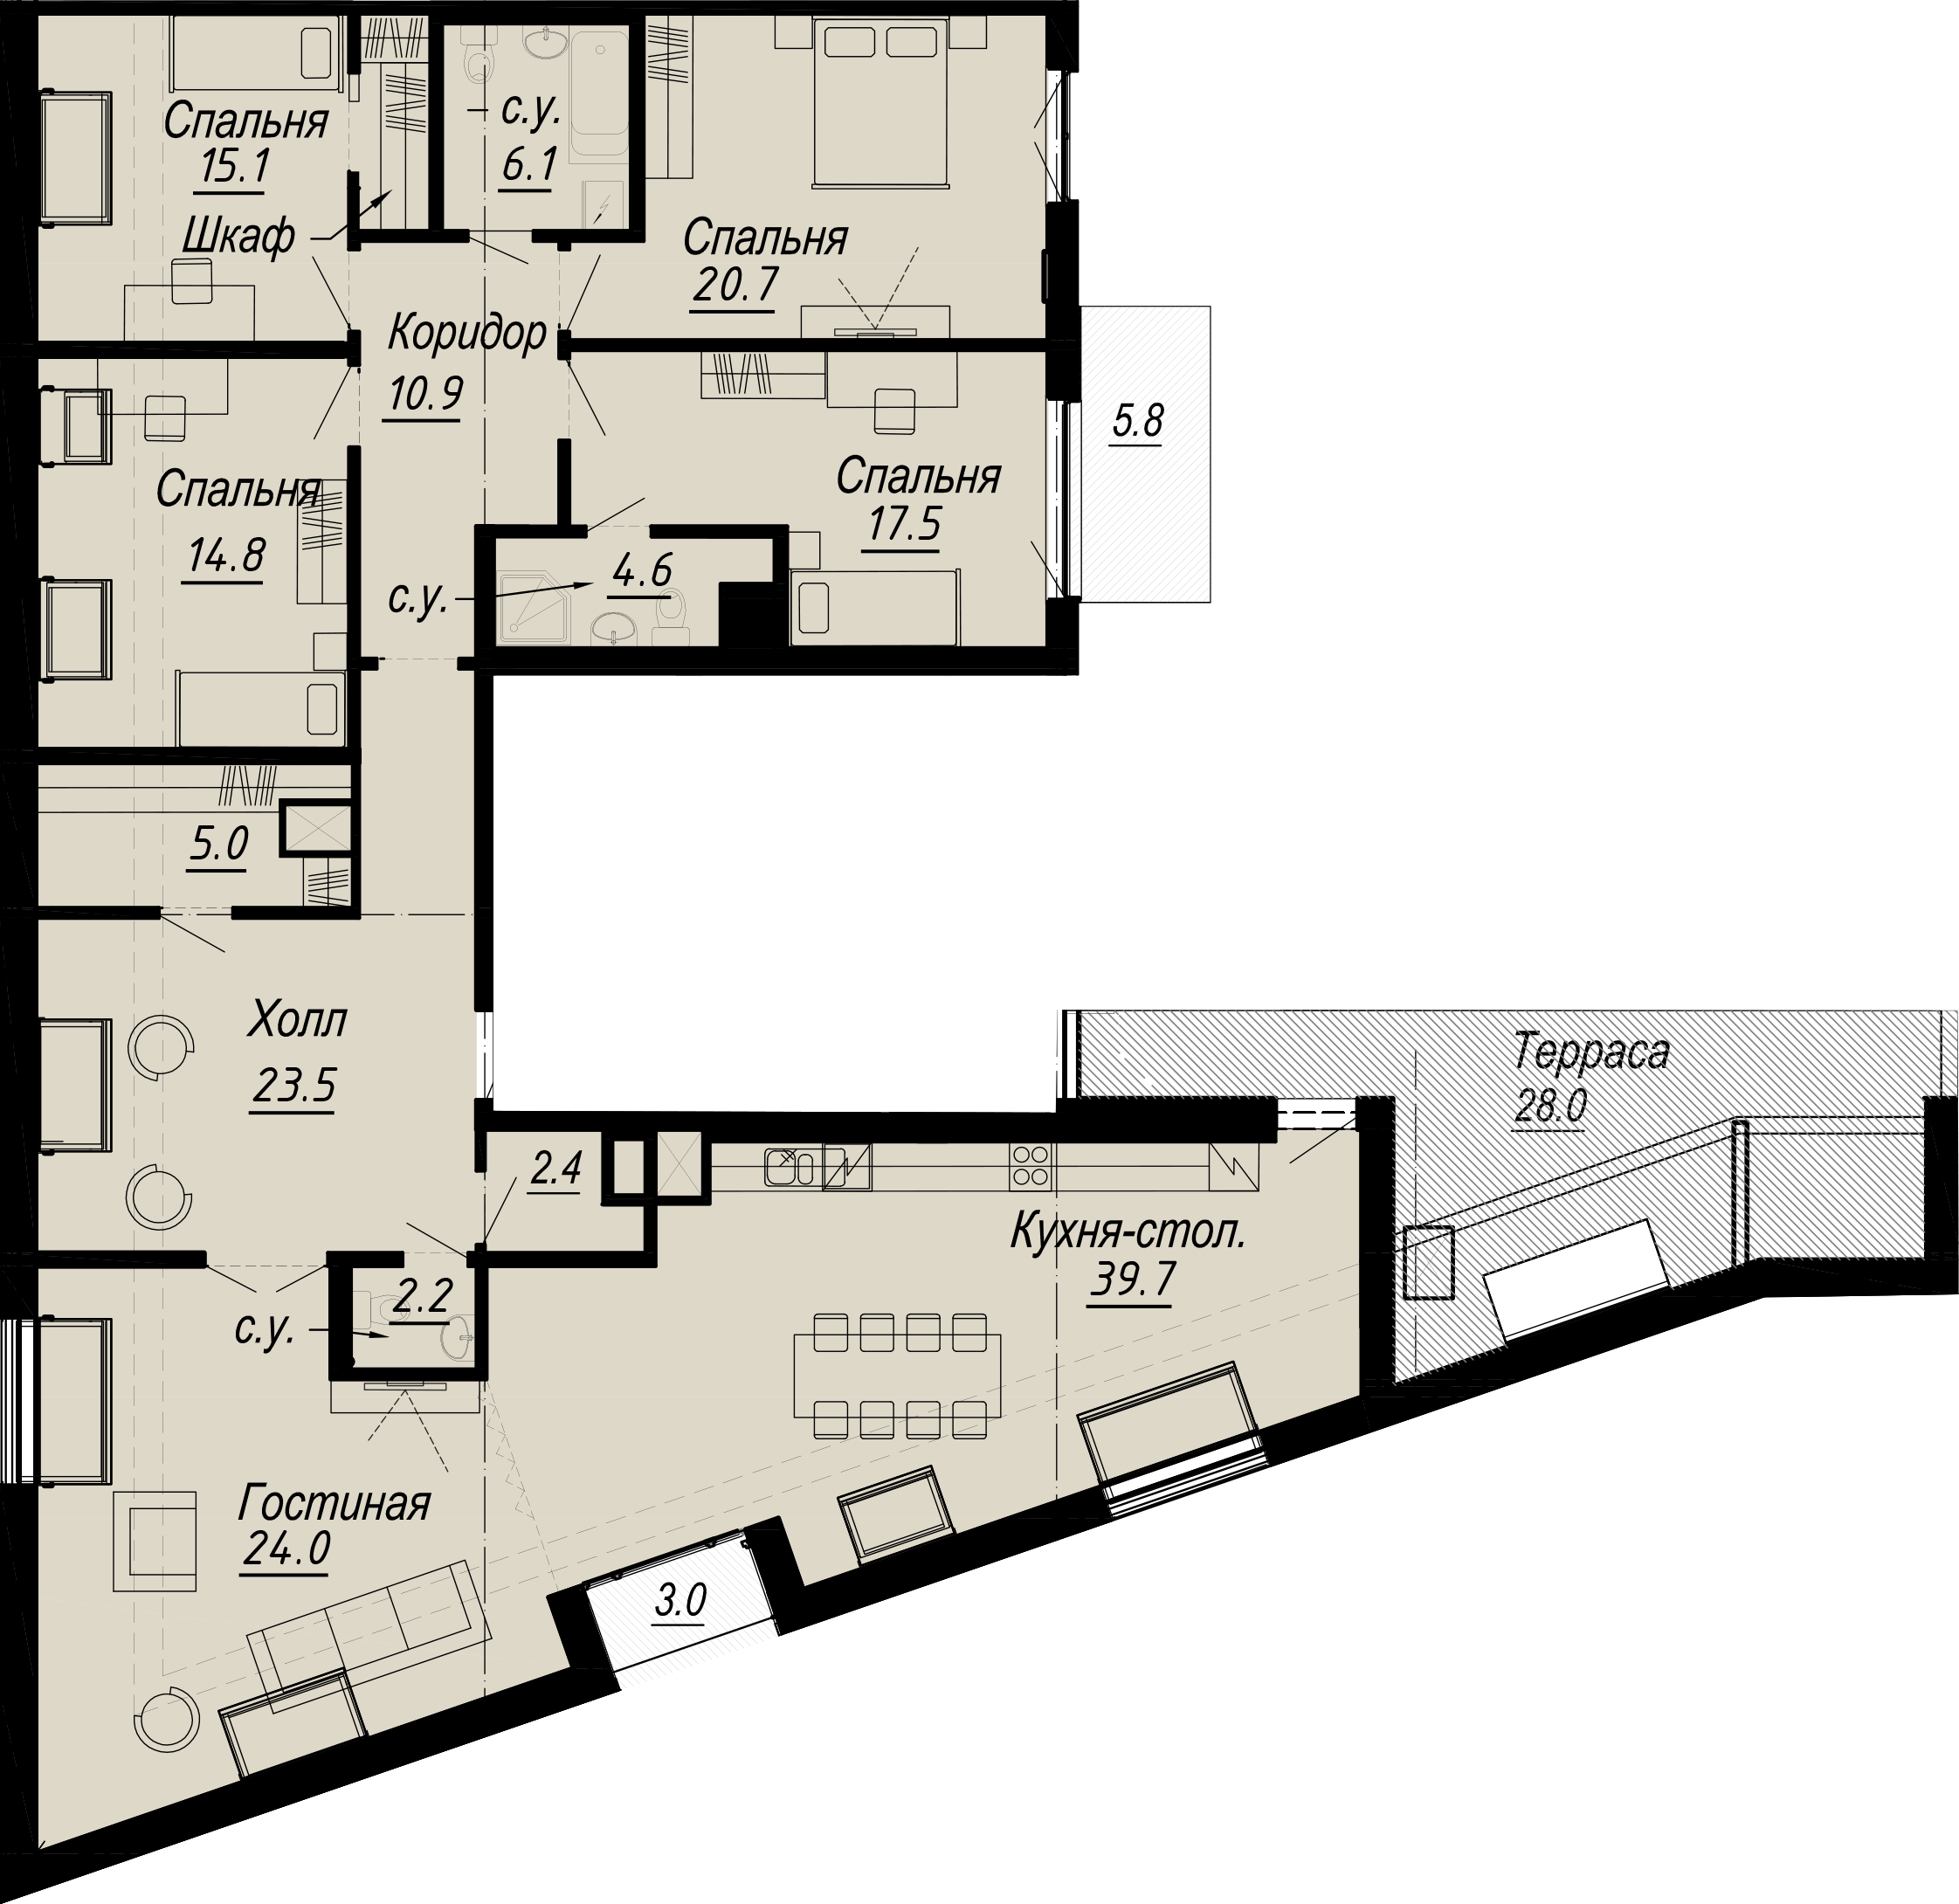 5-комнатная квартира  №11-8 в Meltzer Hall: 208.24 м², этаж 8 - купить в Санкт-Петербурге